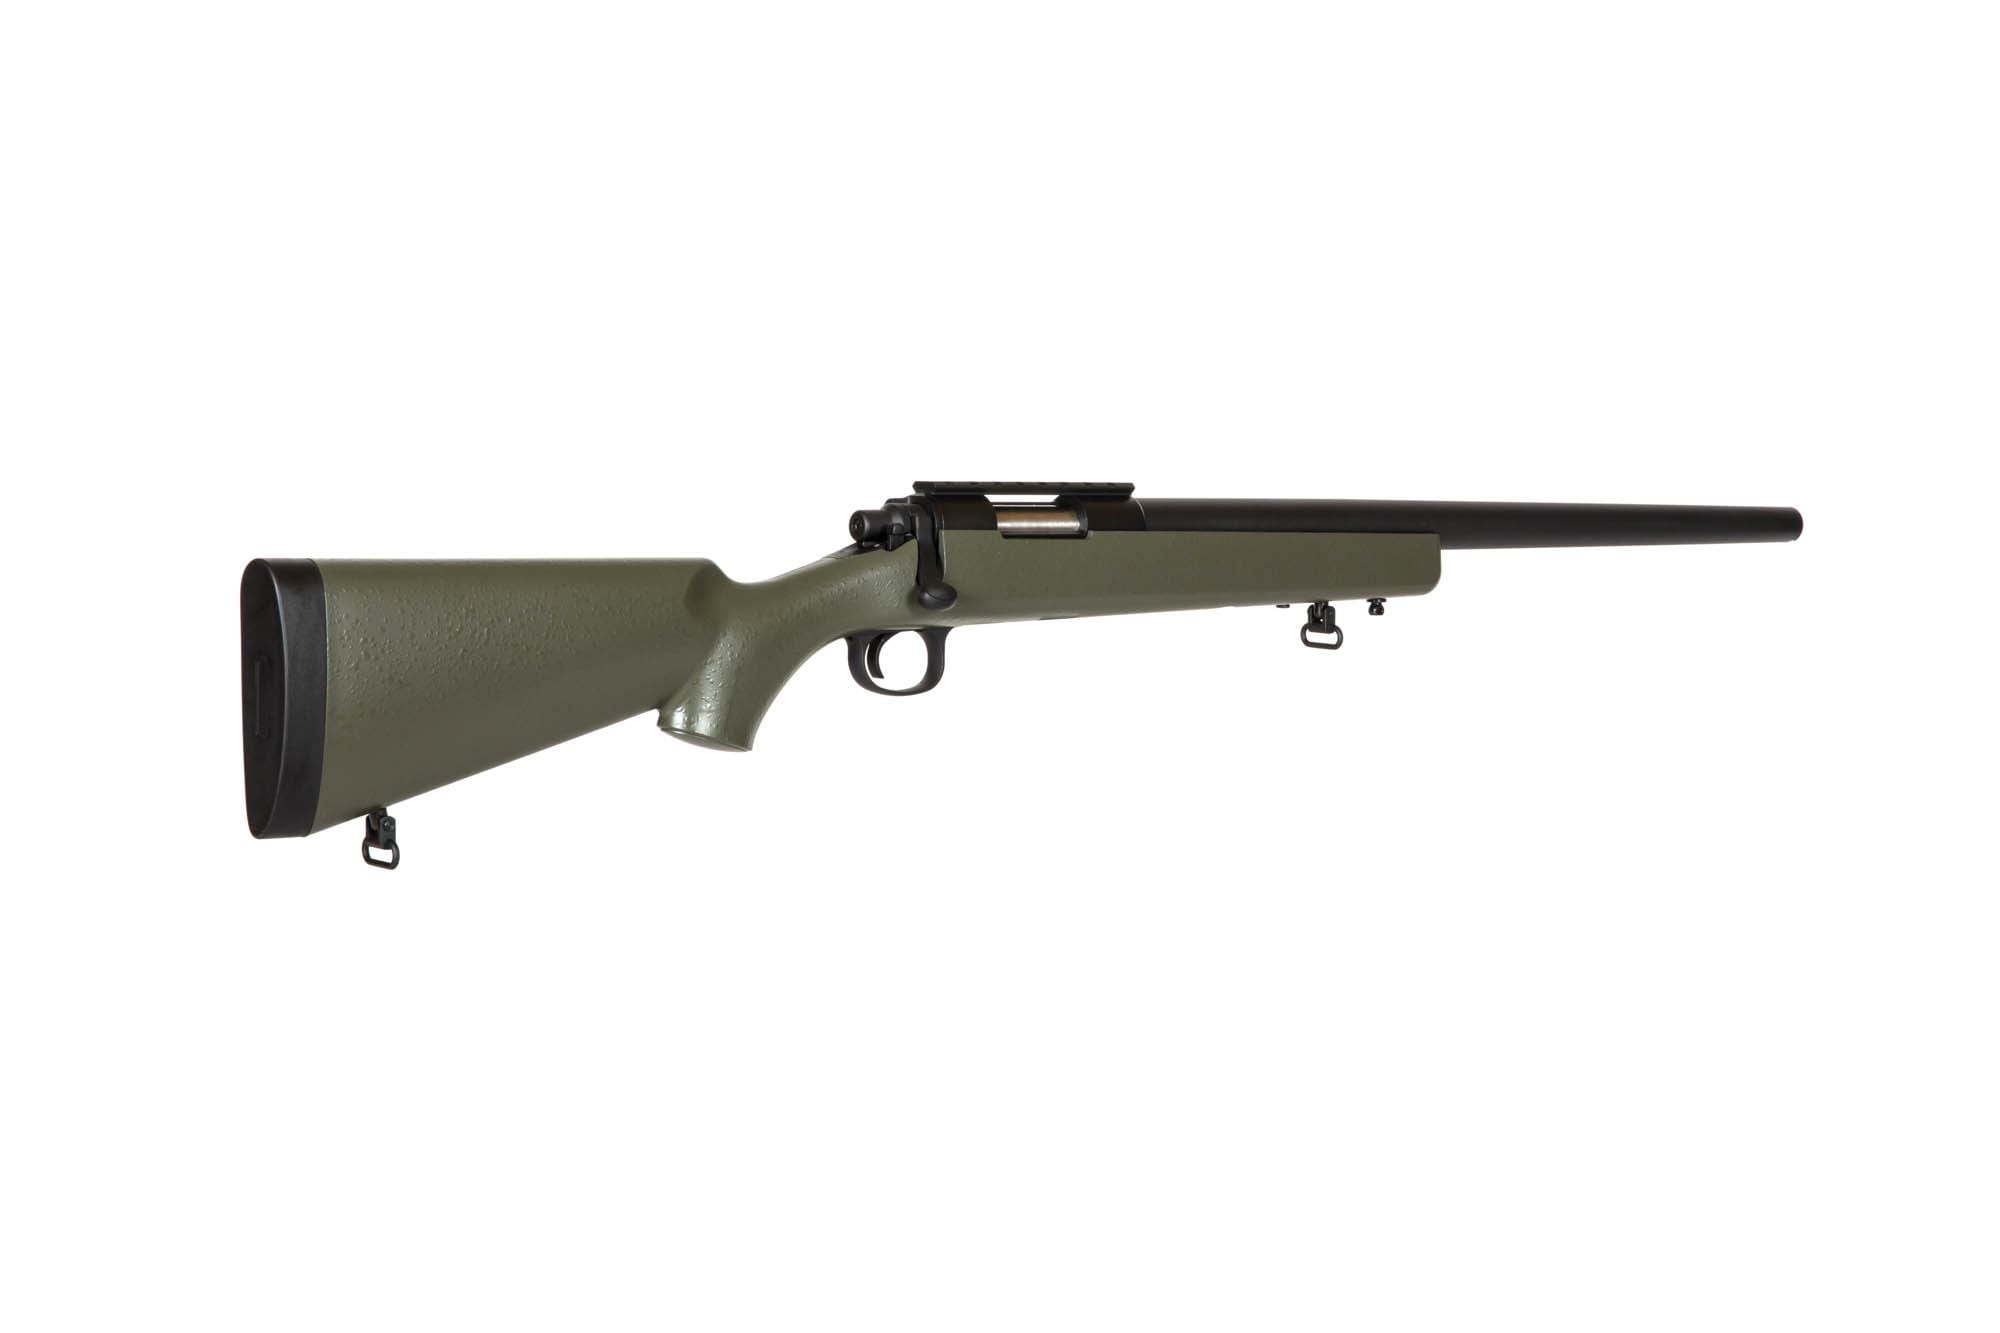 SW-10 Upgraded VSR10 Sniper Rifle Replica - olive